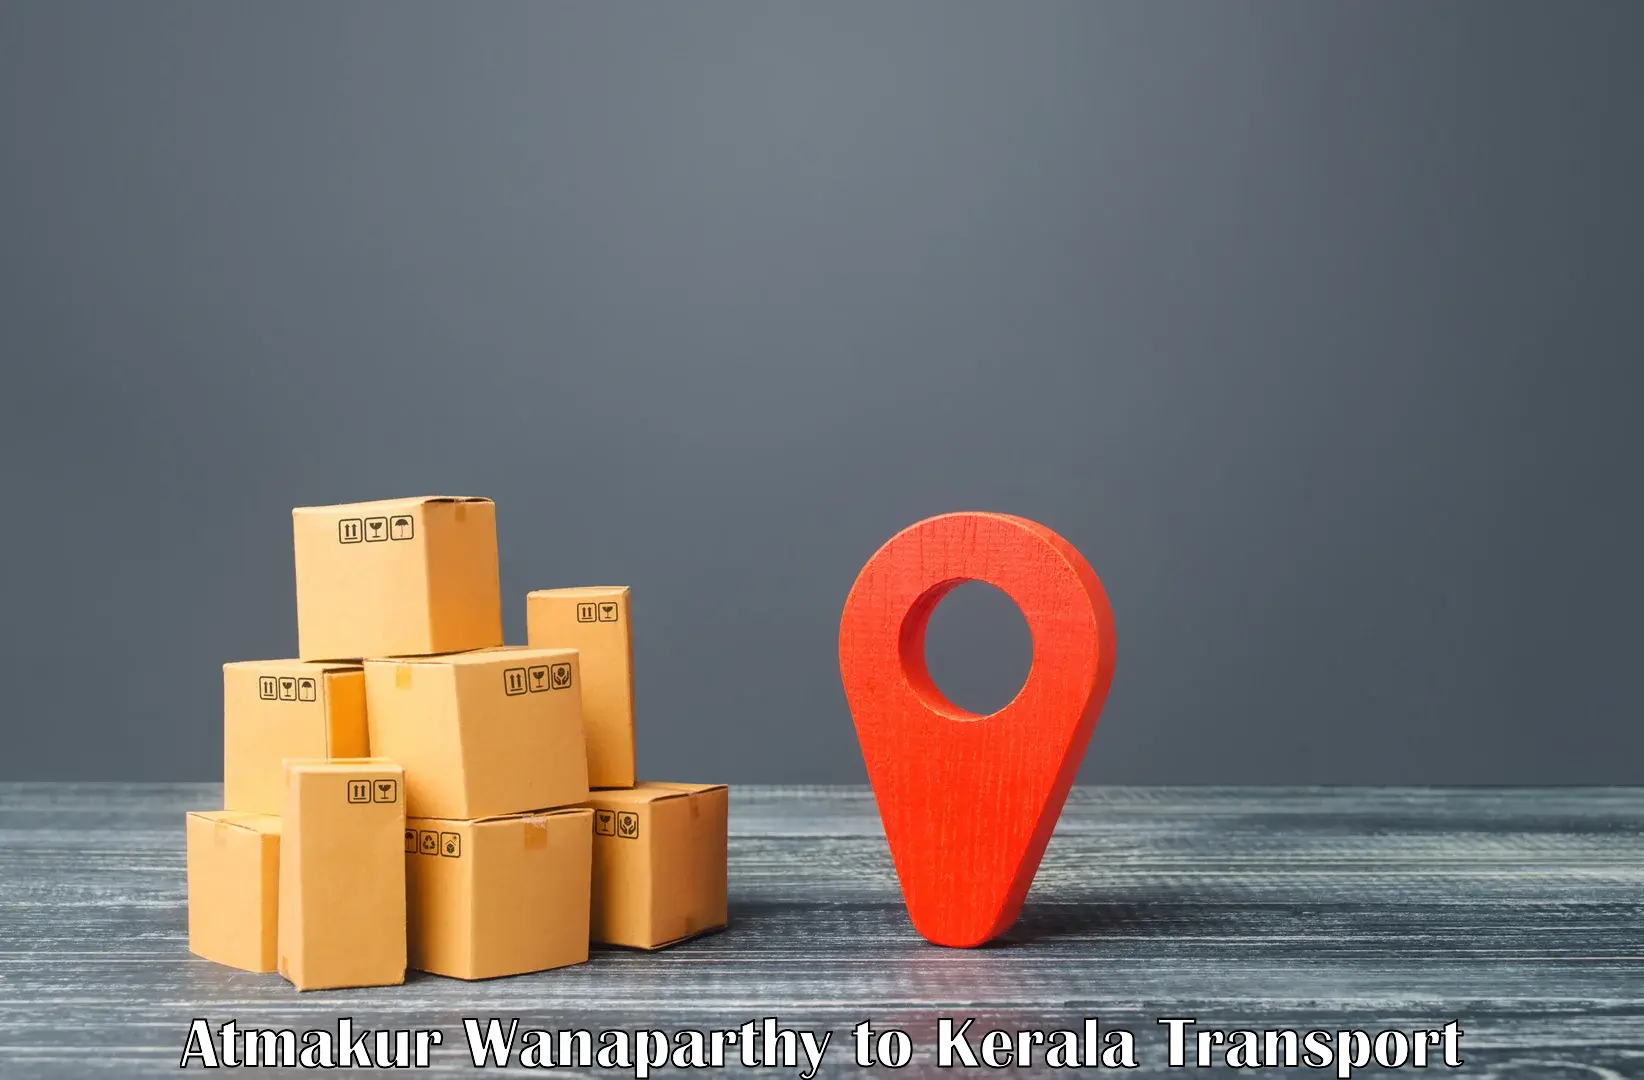 Cargo transportation services Atmakur Wanaparthy to Kochi